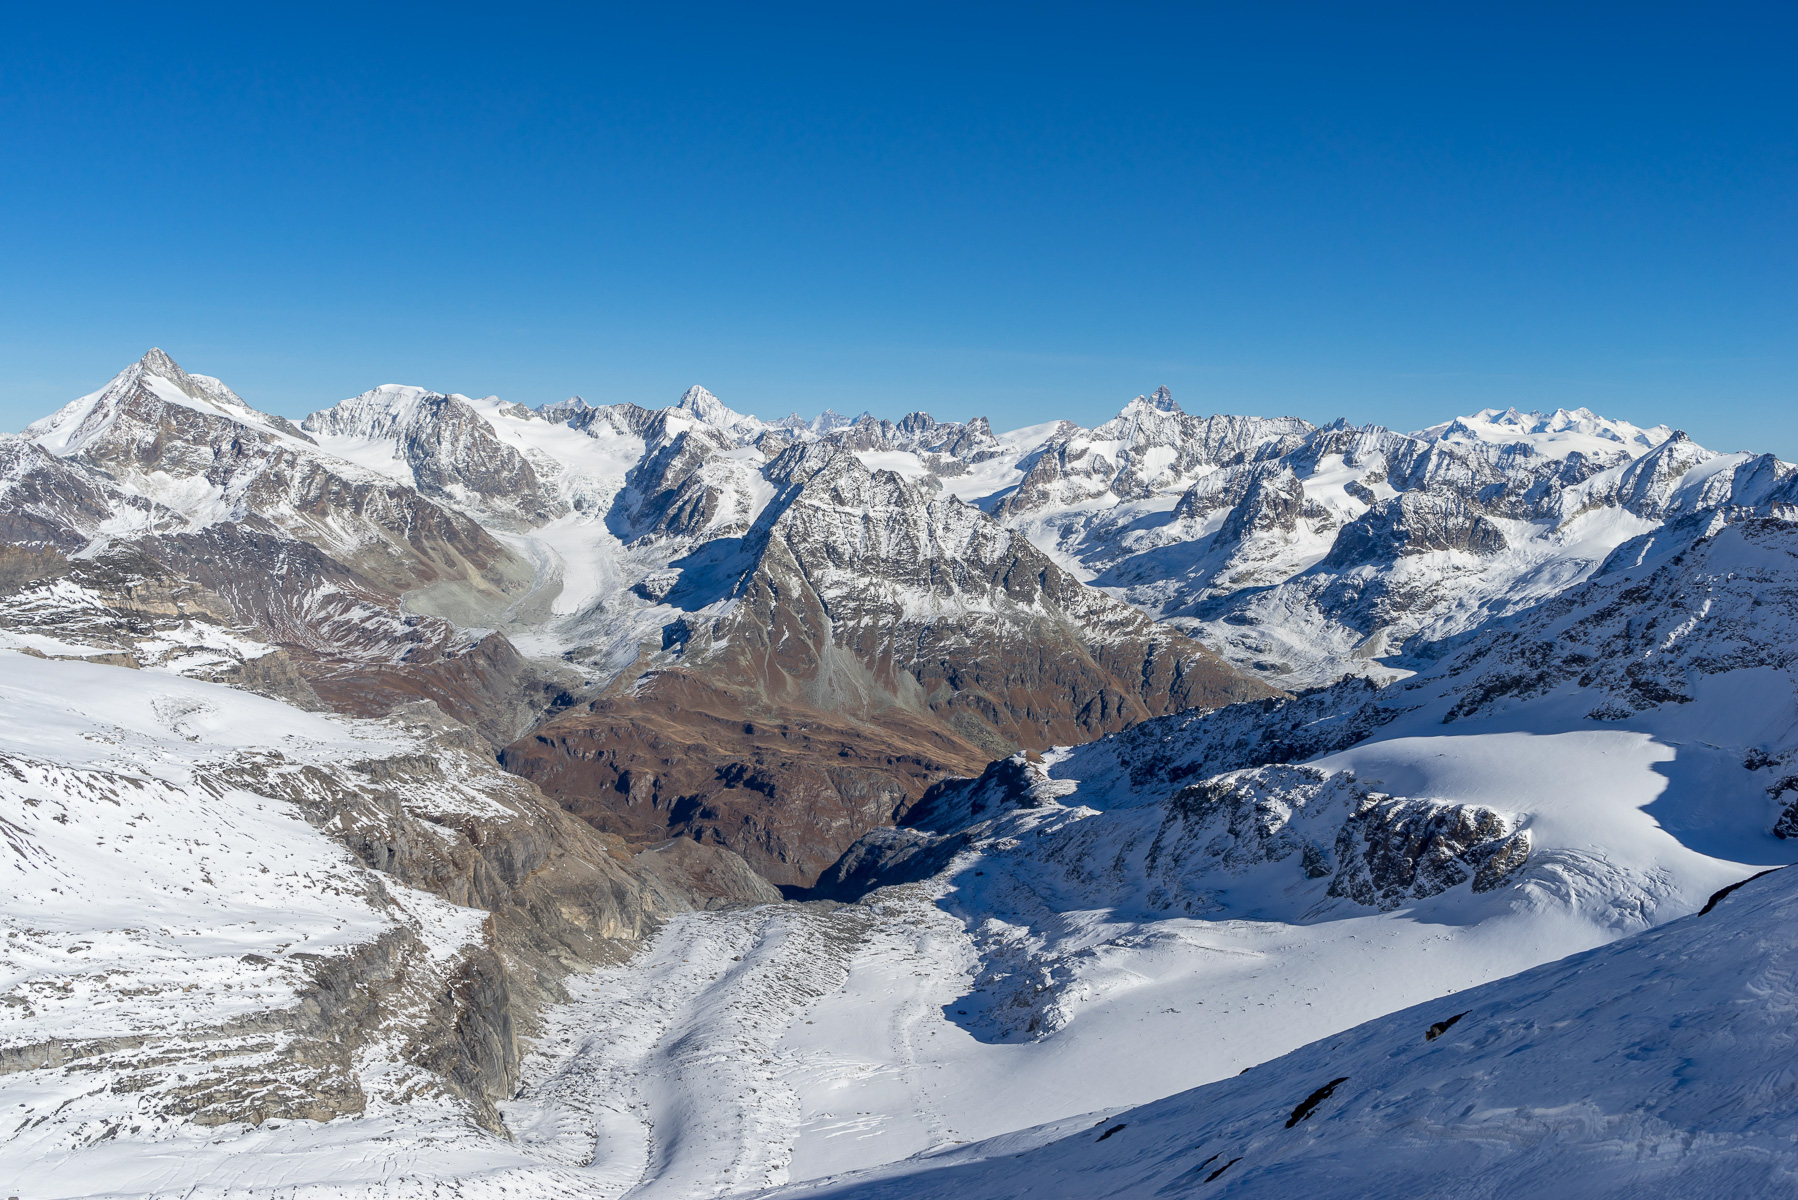 Blick auf die Walliser Berge: La Ruinette, Dent Blanche, Matterhorn und Monte Rosa.